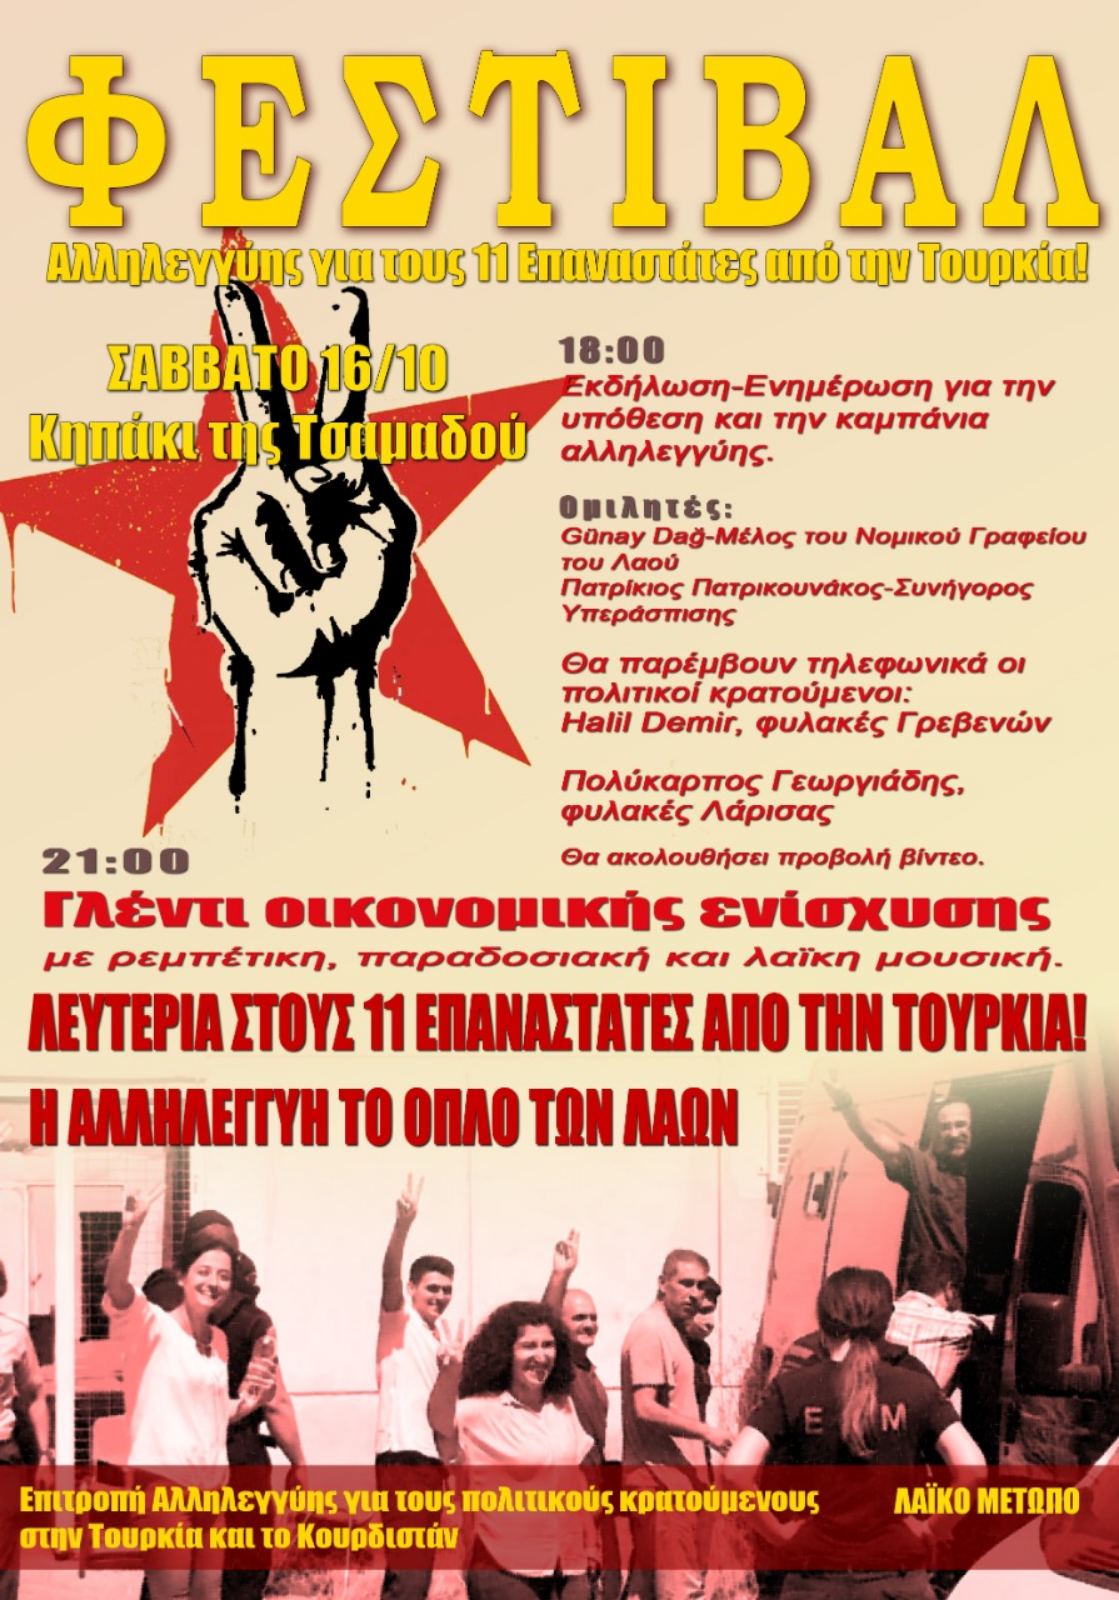 Φεστιβάλ αλληλεγγύης για τους 11 επαναστάτες από την Τουρκία, Σάββατο 16/10, Κηπάκι της Τσαμαδού. Καλούμε για συμμετοχή στο φεστιβάλ [...]